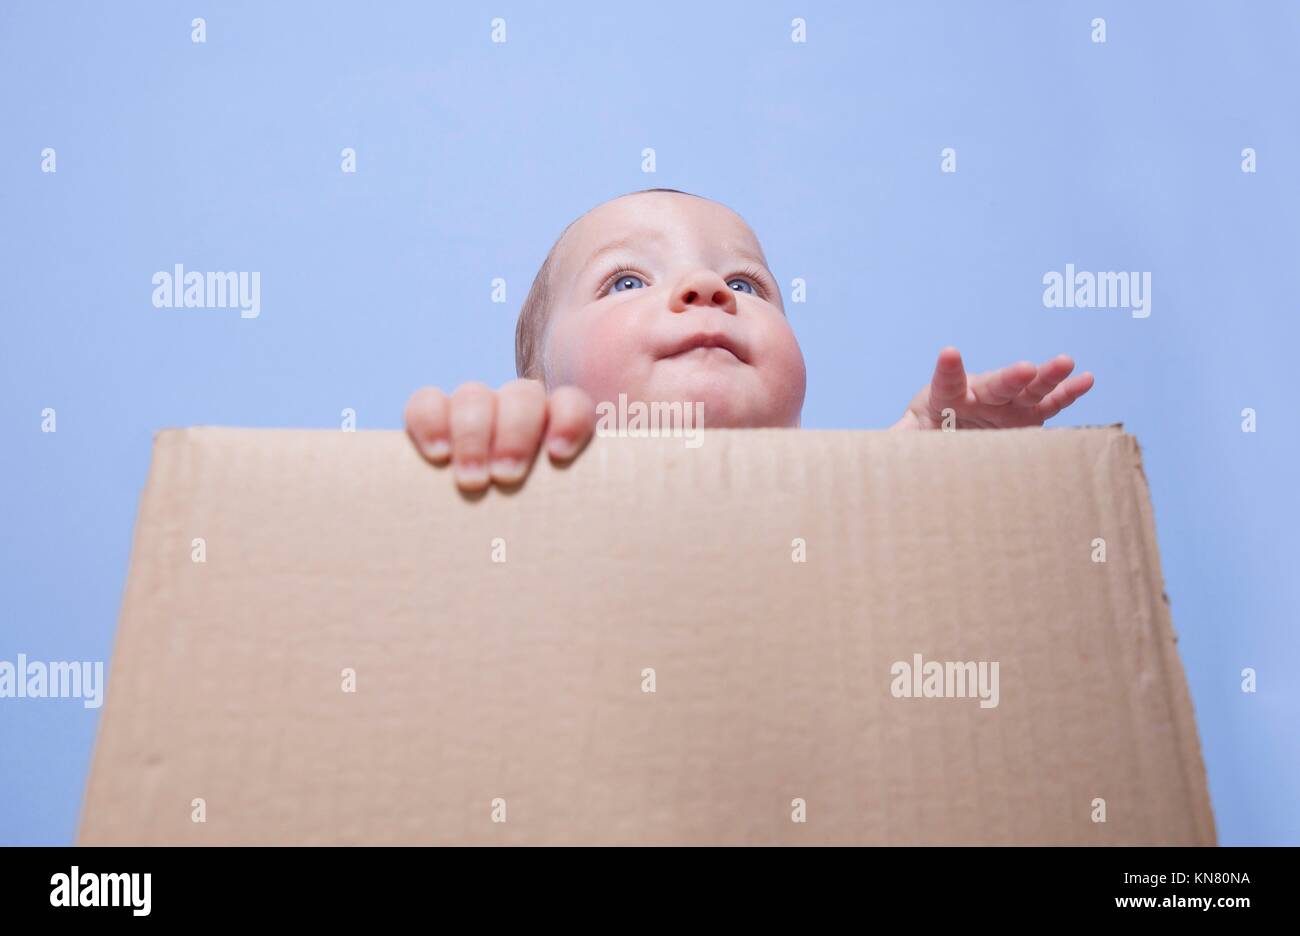 Retrato de un lindo bebé jugando en una caja de cartón marrón. Foto de stock